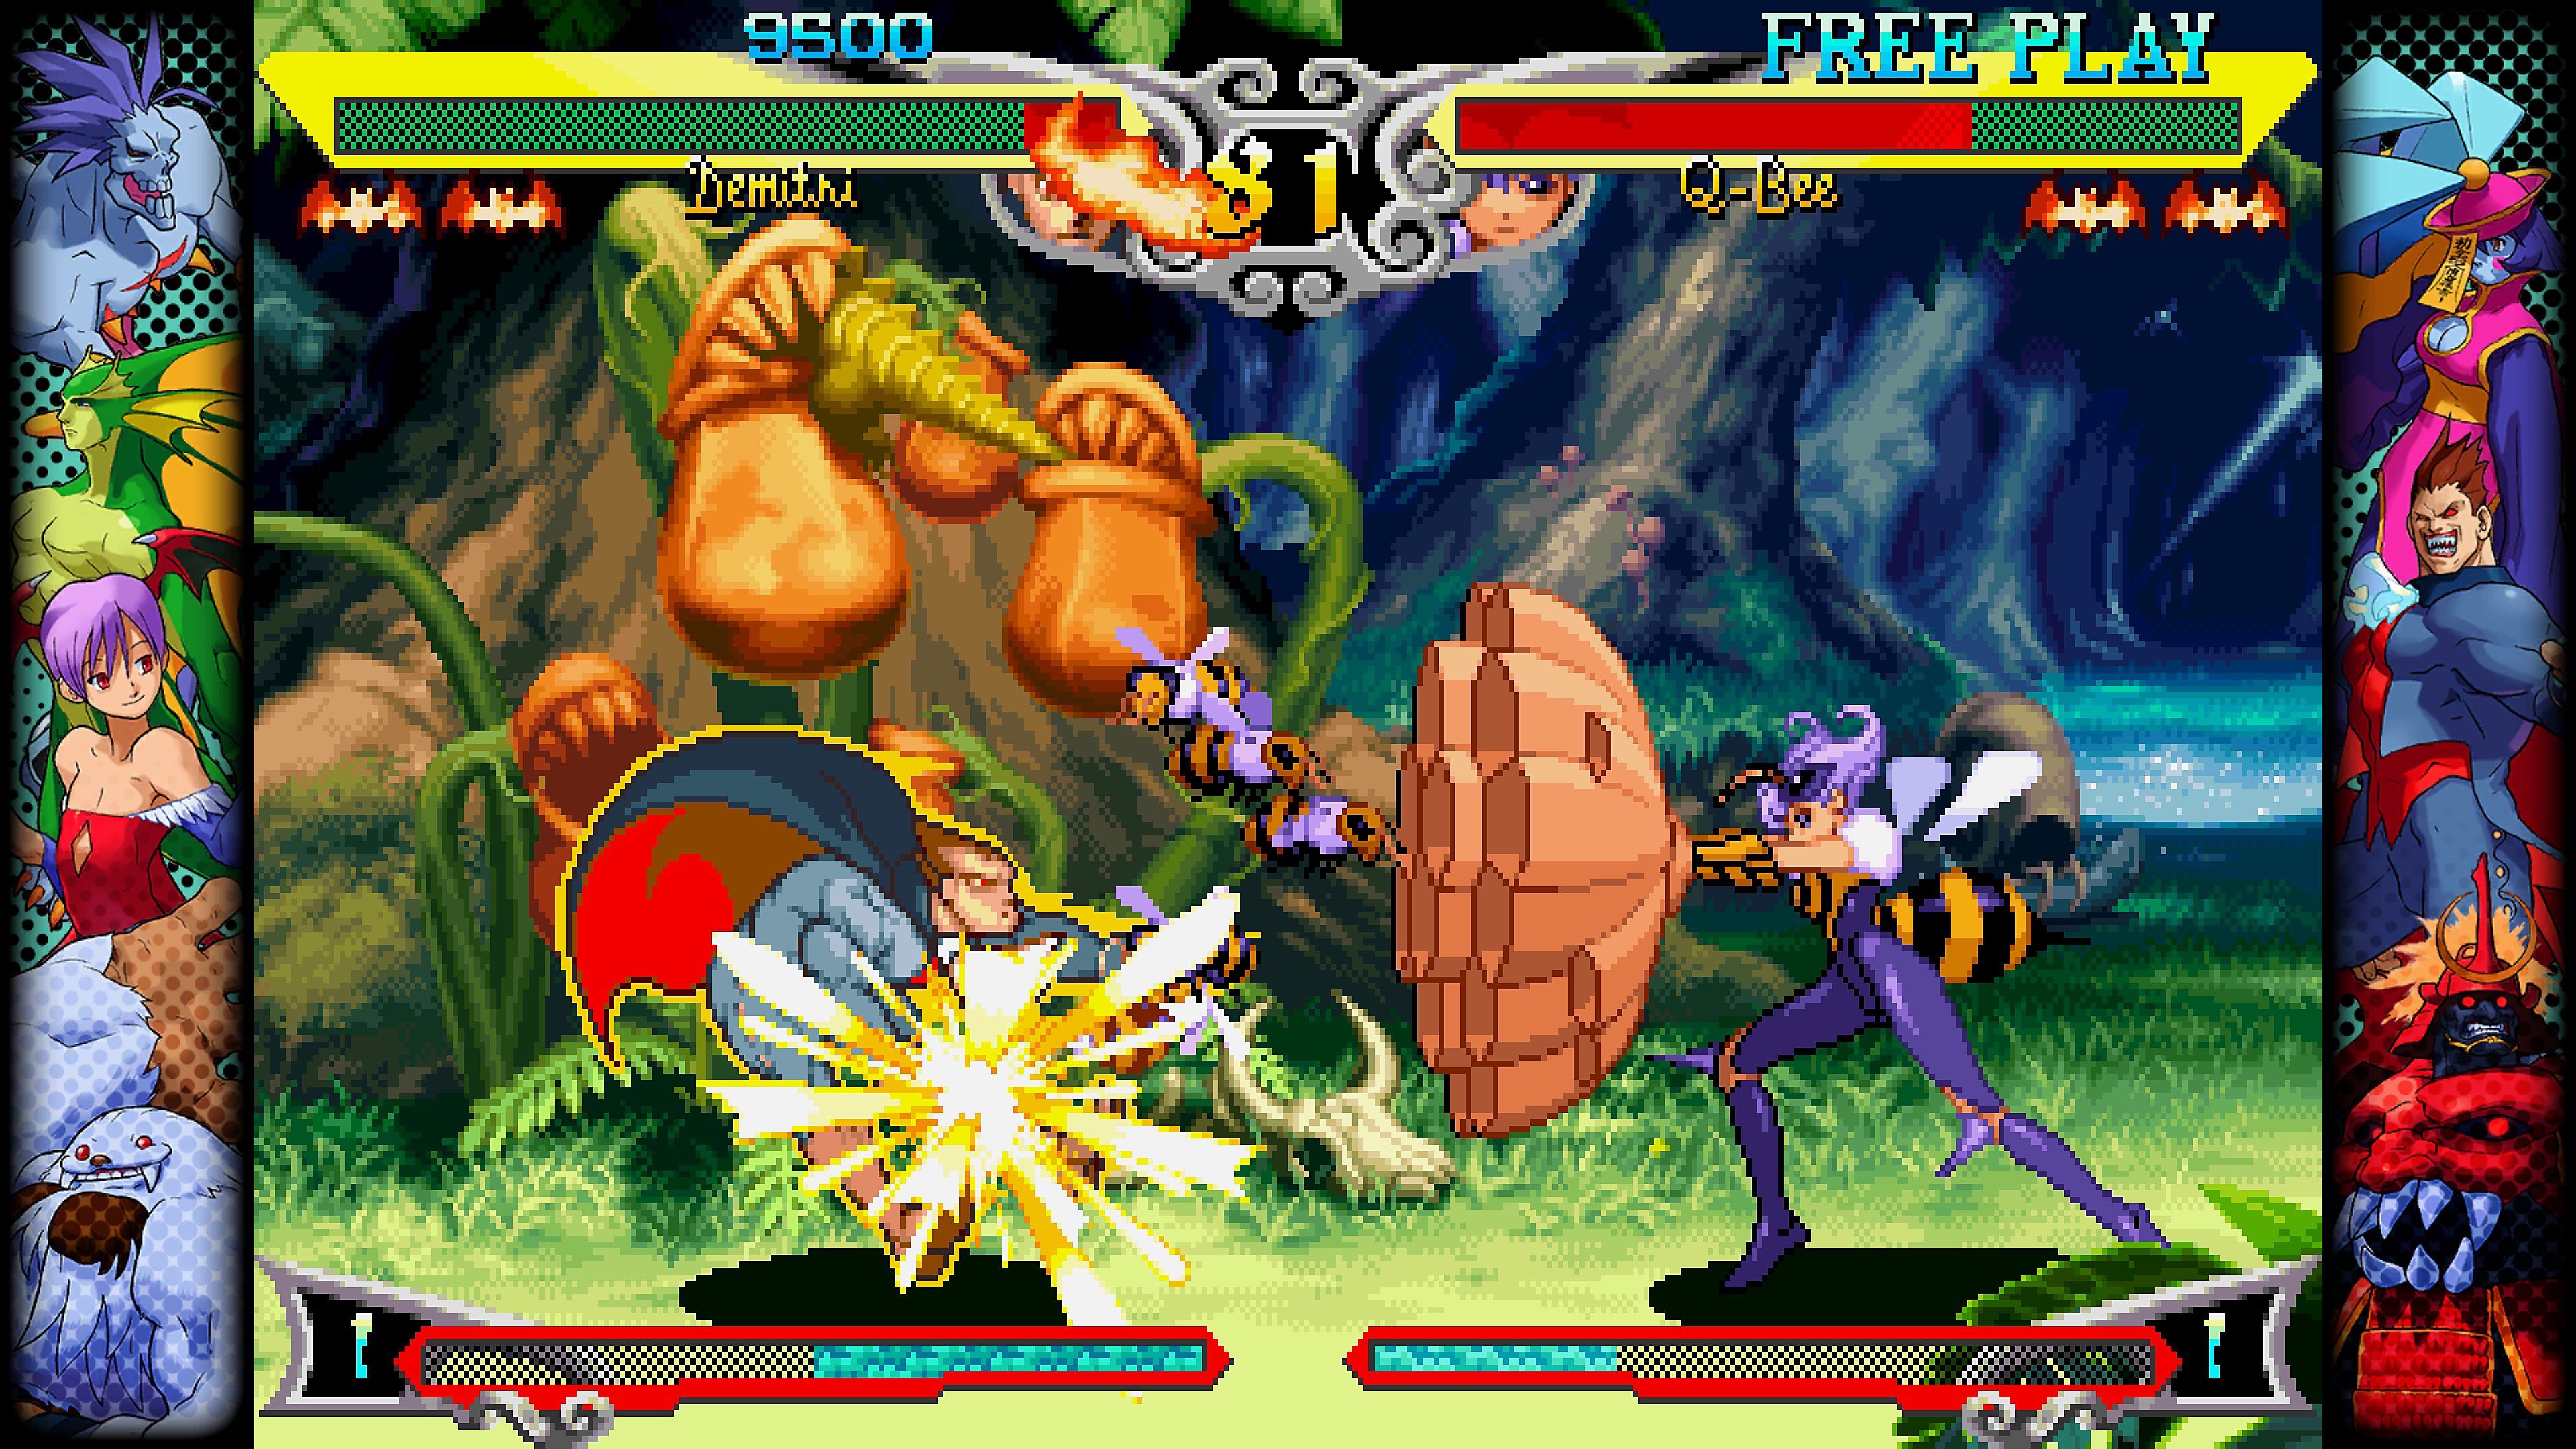 Skjermbilde fra Capcom Fighting Collection av en slåsskamp mellom to figurer